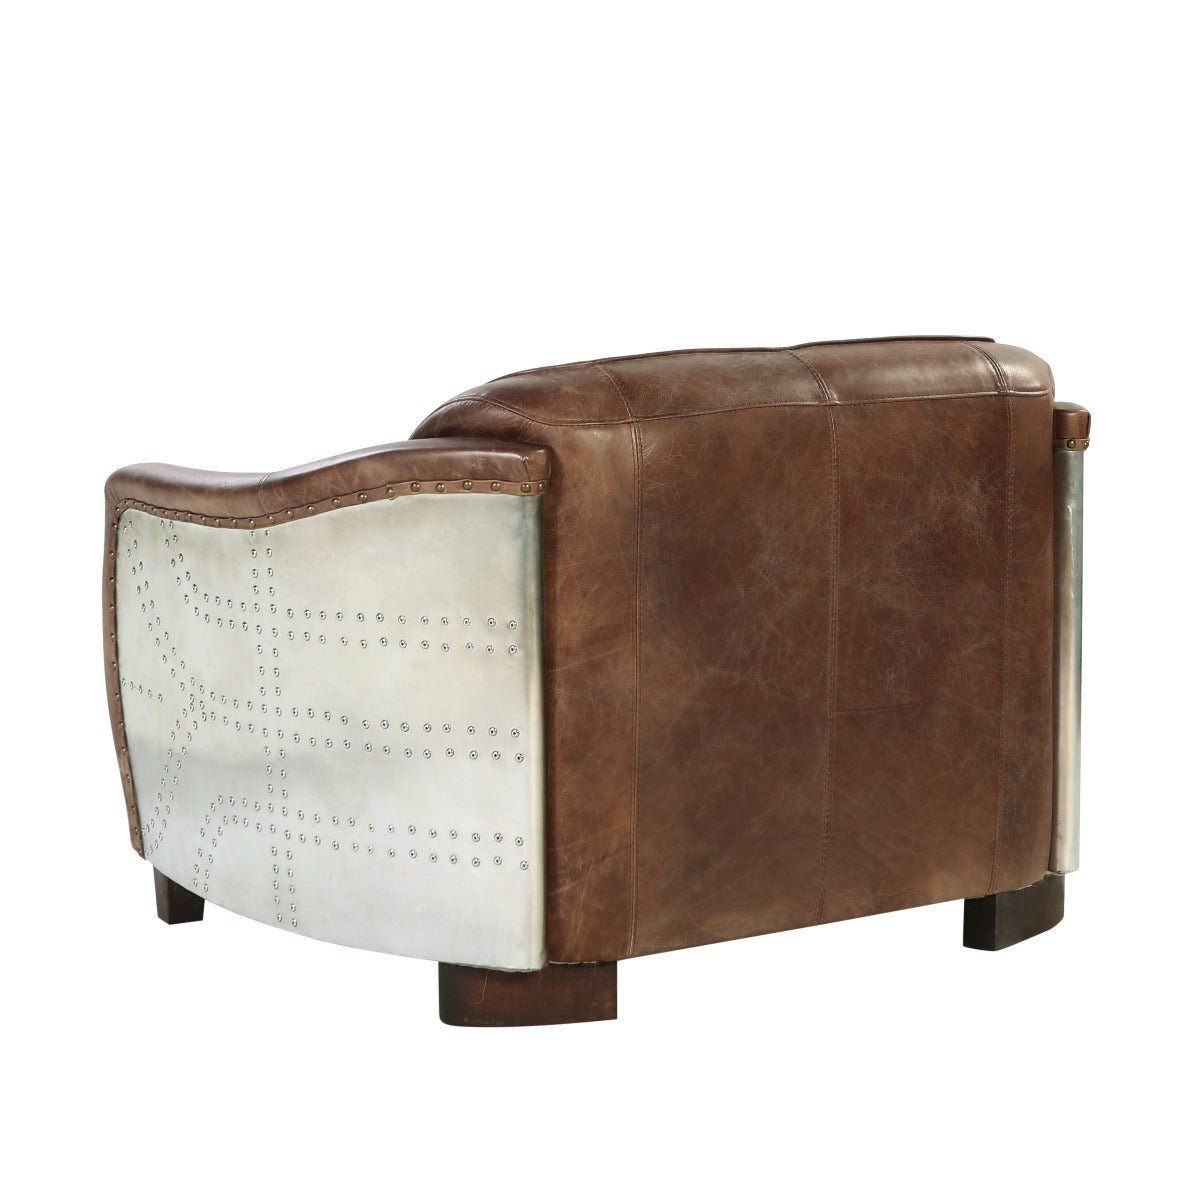 ACME Furniture TV & Media Units - Brancaster Loveseat, Retro Brown Top Grain Leather & Aluminum